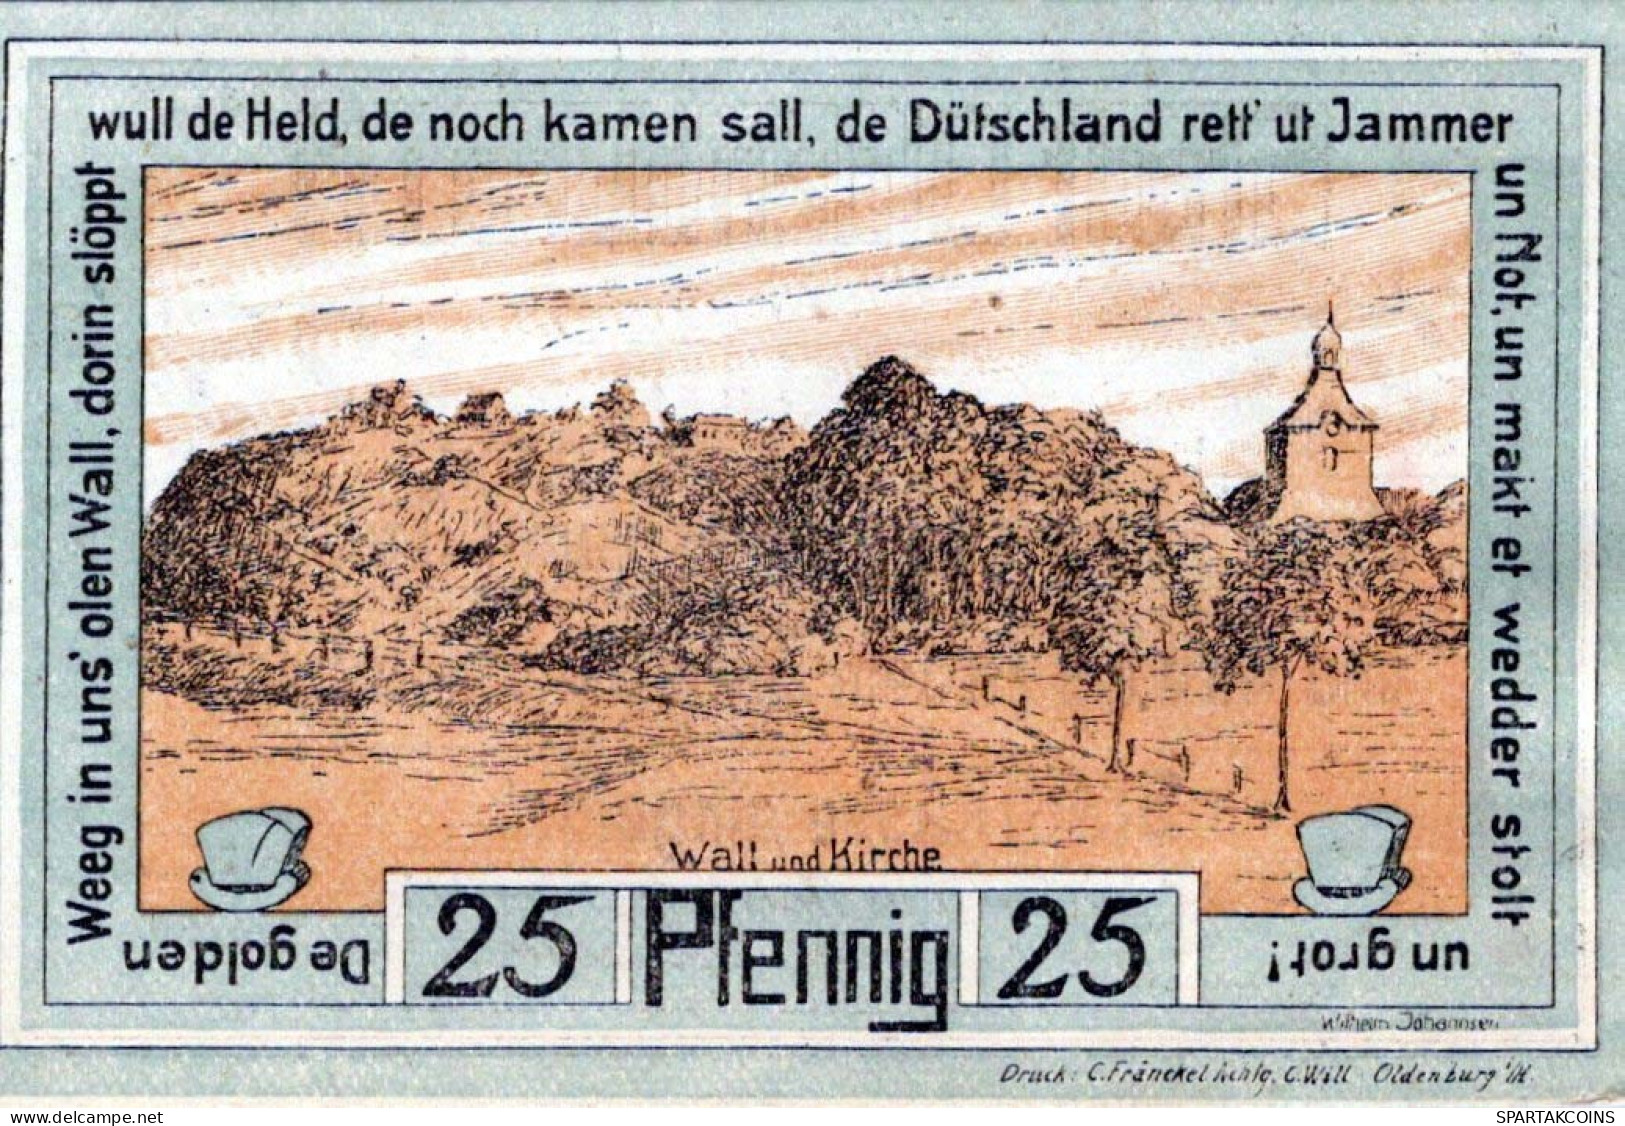 25 PFENNIG 1922 Stadt OLDENBURG IN HOLSTEIN UNC DEUTSCHLAND #PI020 - [11] Local Banknote Issues